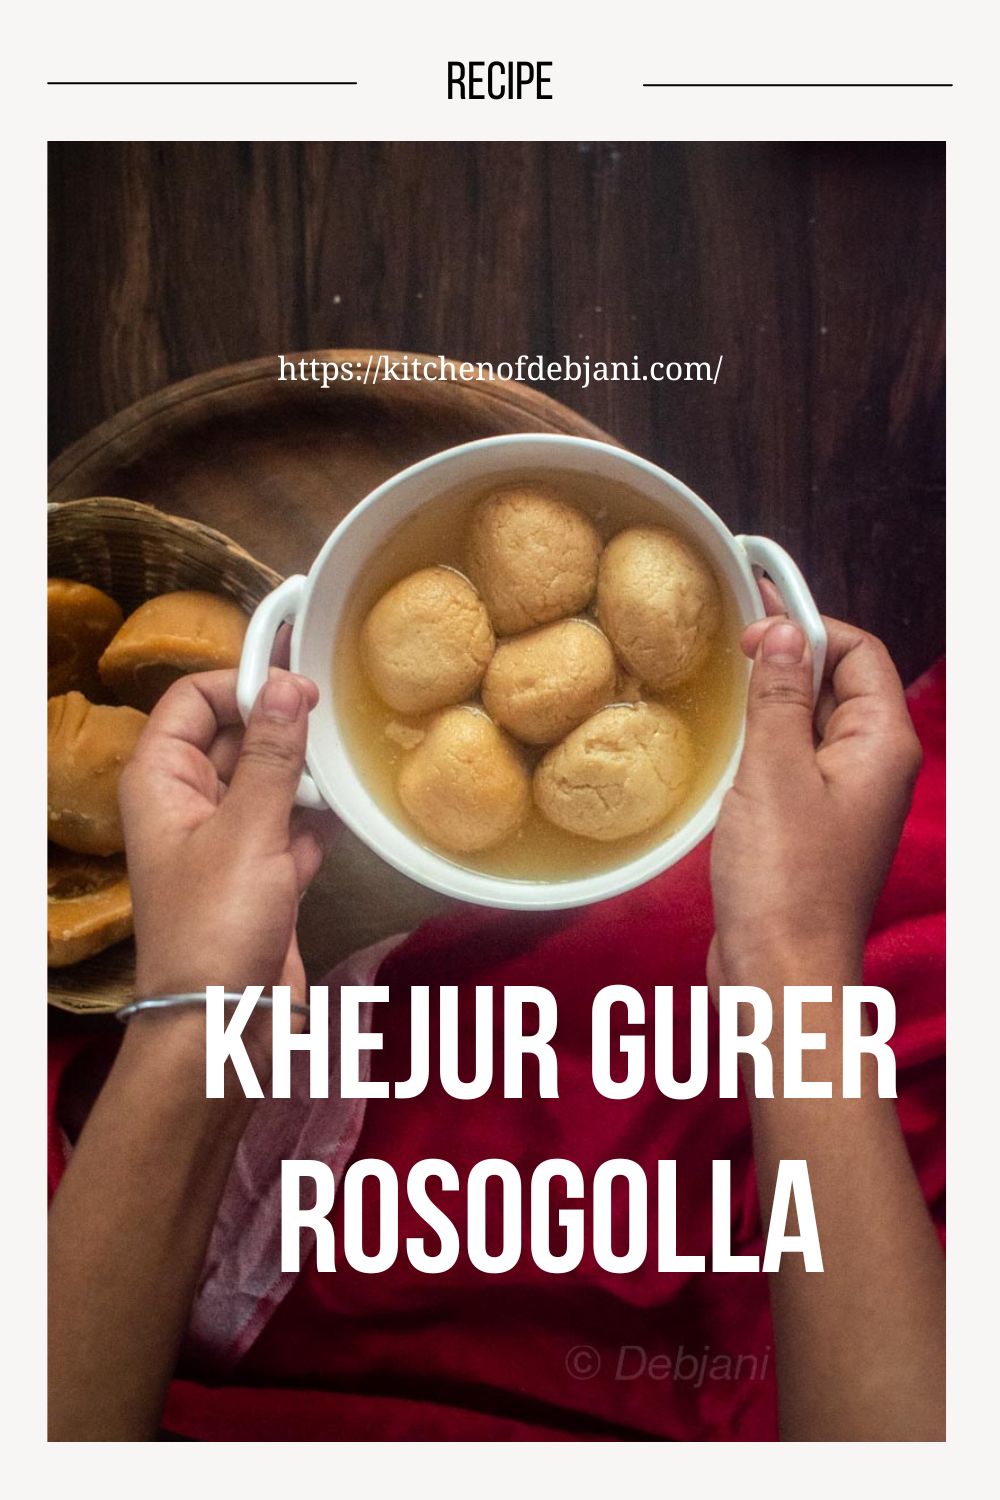 %Khejur Gurer Rosogolla Recipe Pinterest Graphic